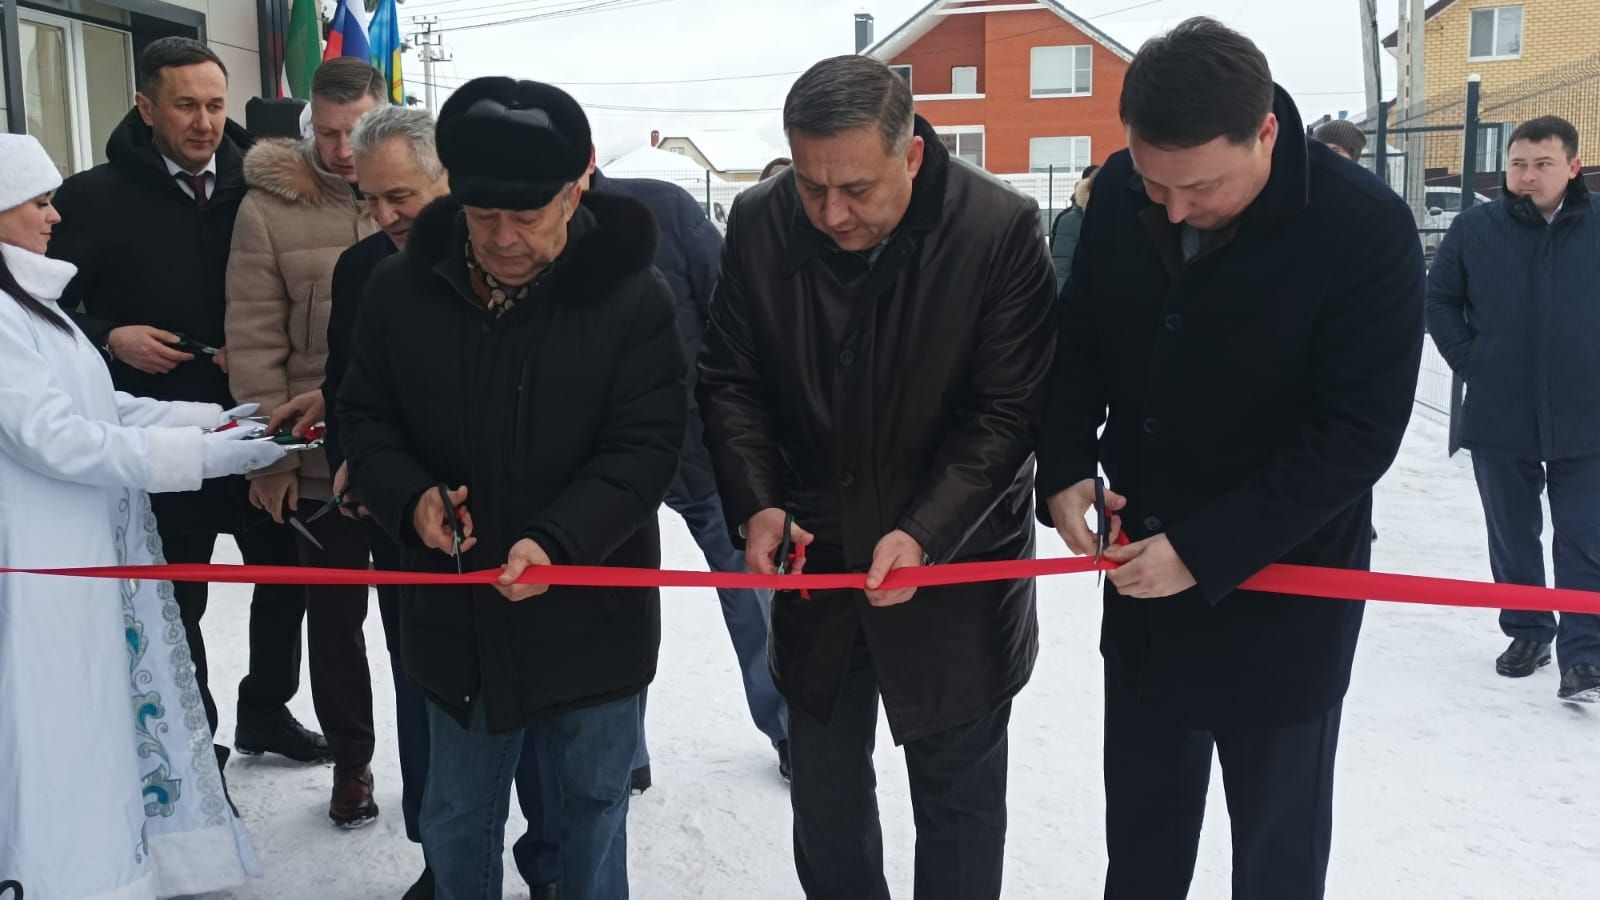 Сегодня открыли здание сельсовета Высокогорского сельского поселения